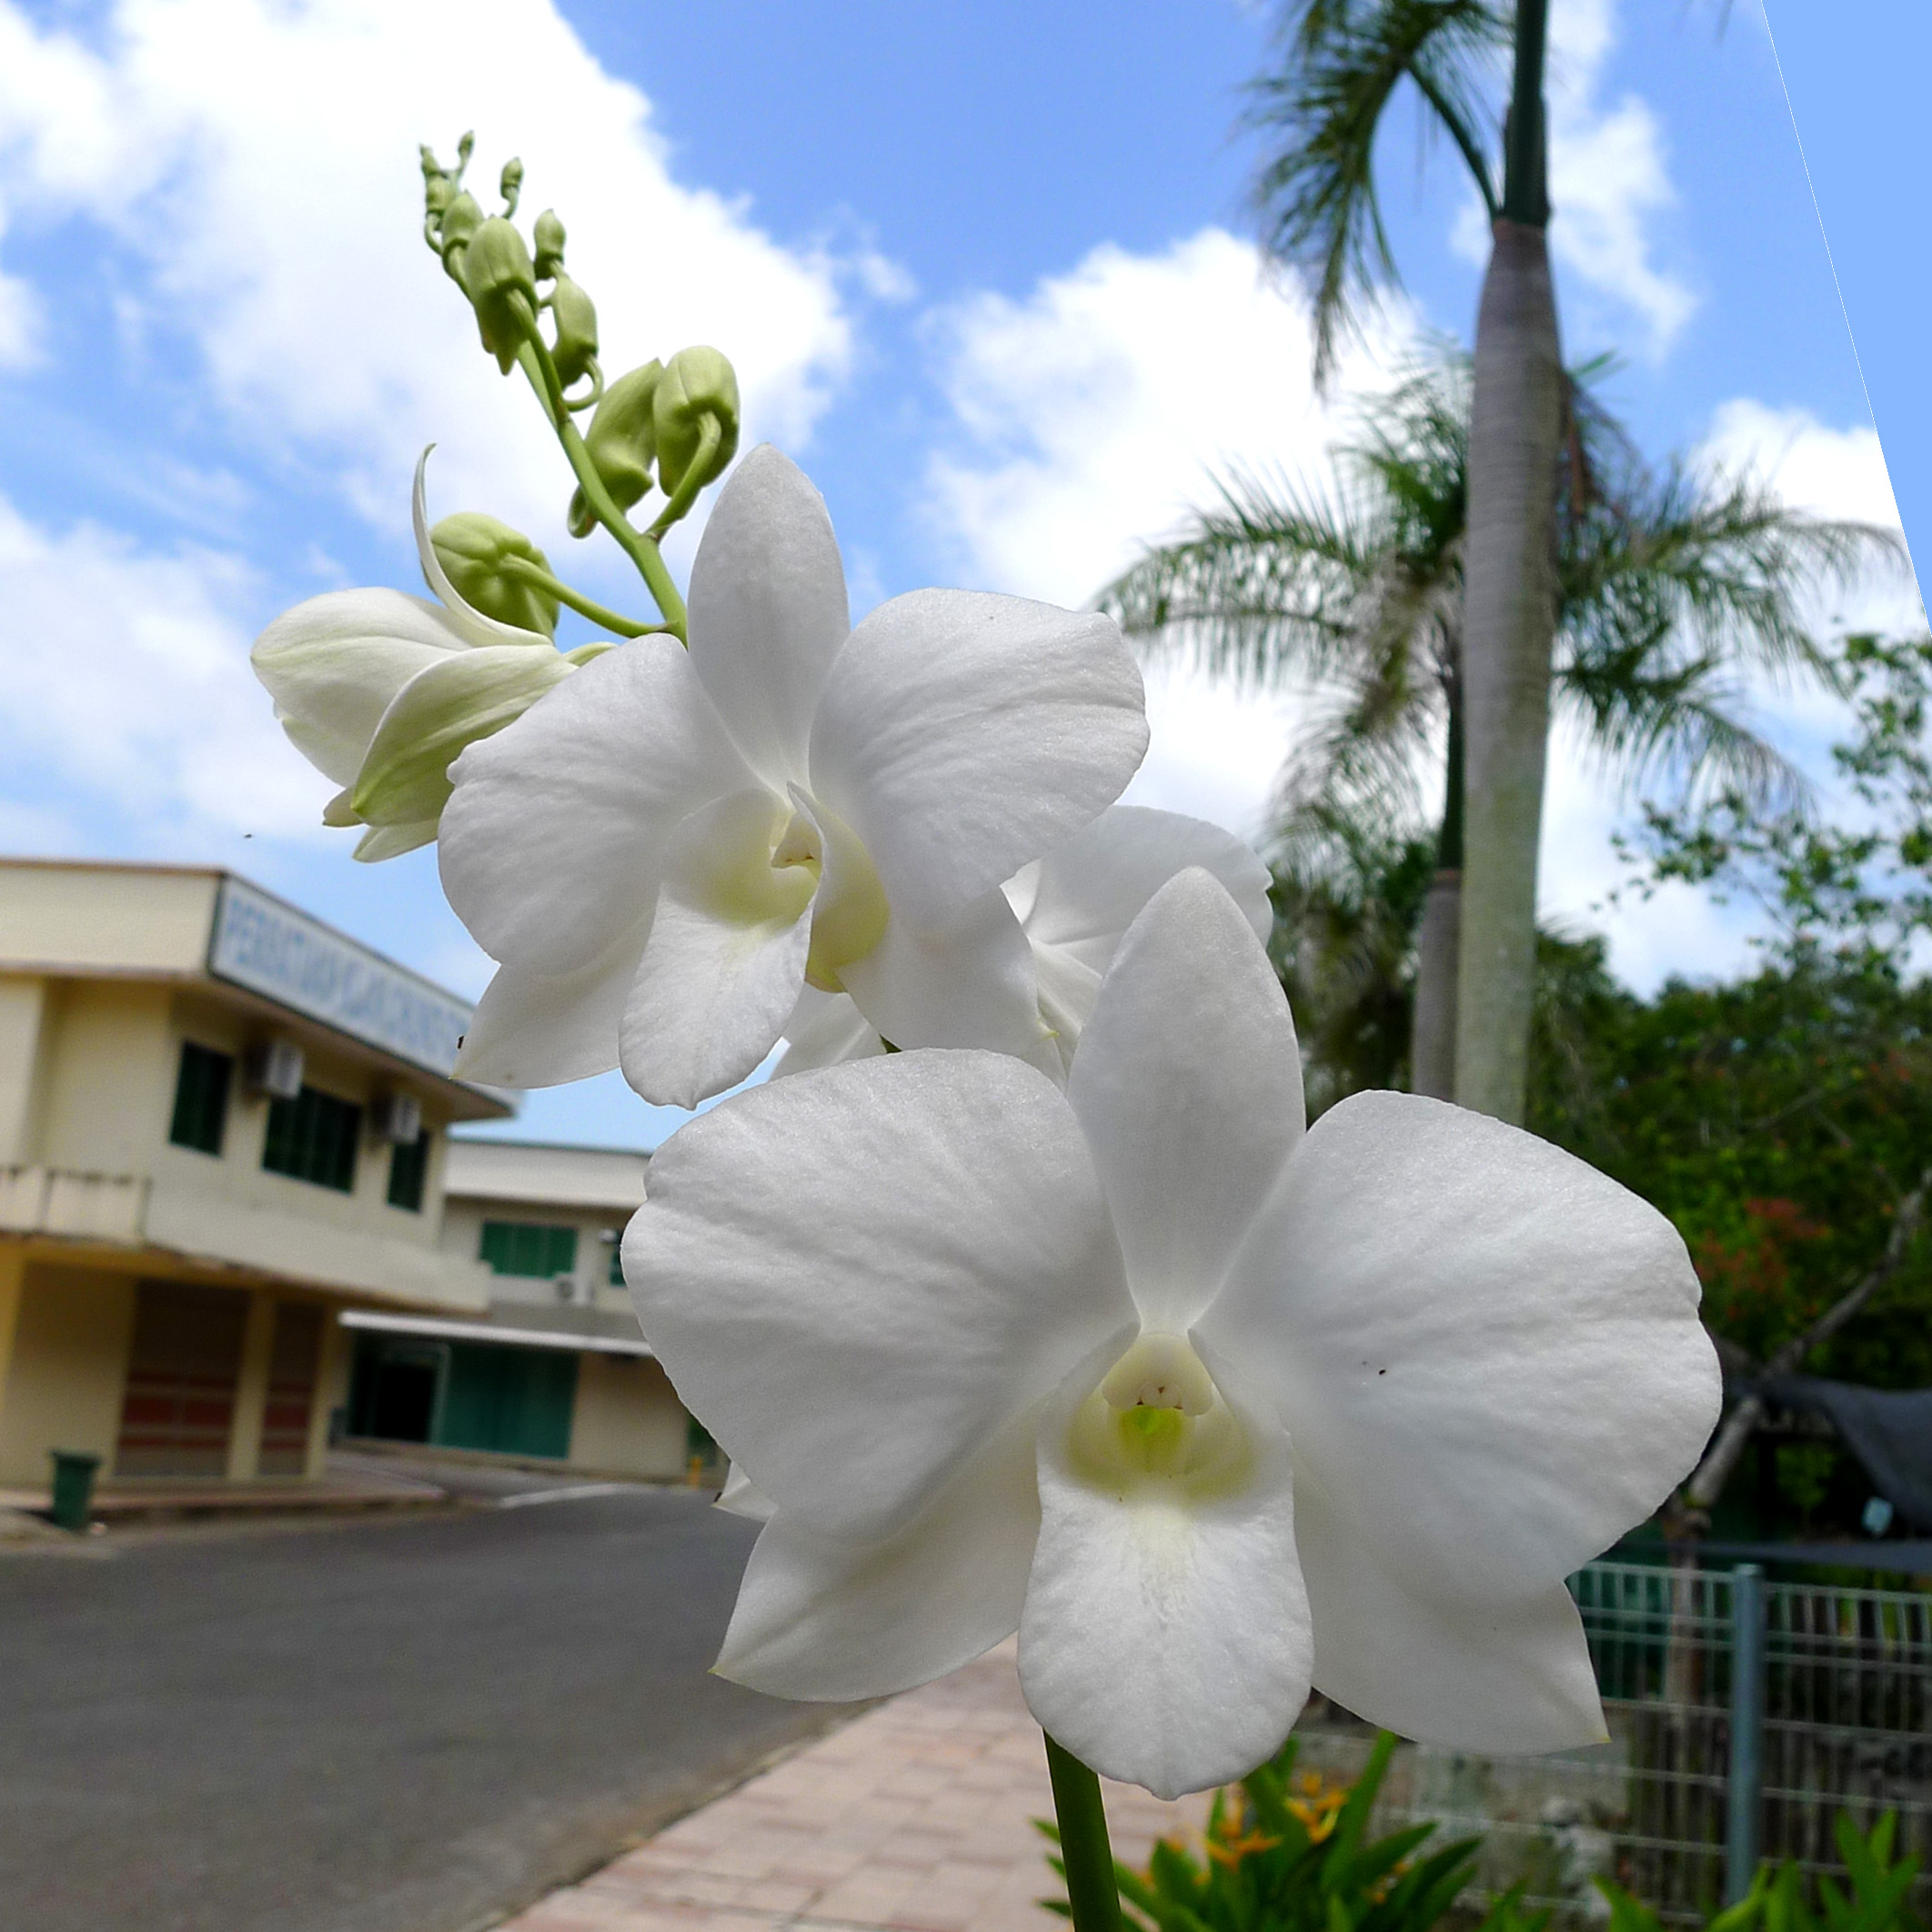 White Orchid flowers in Orchid Garden of Bandar Sri Indah